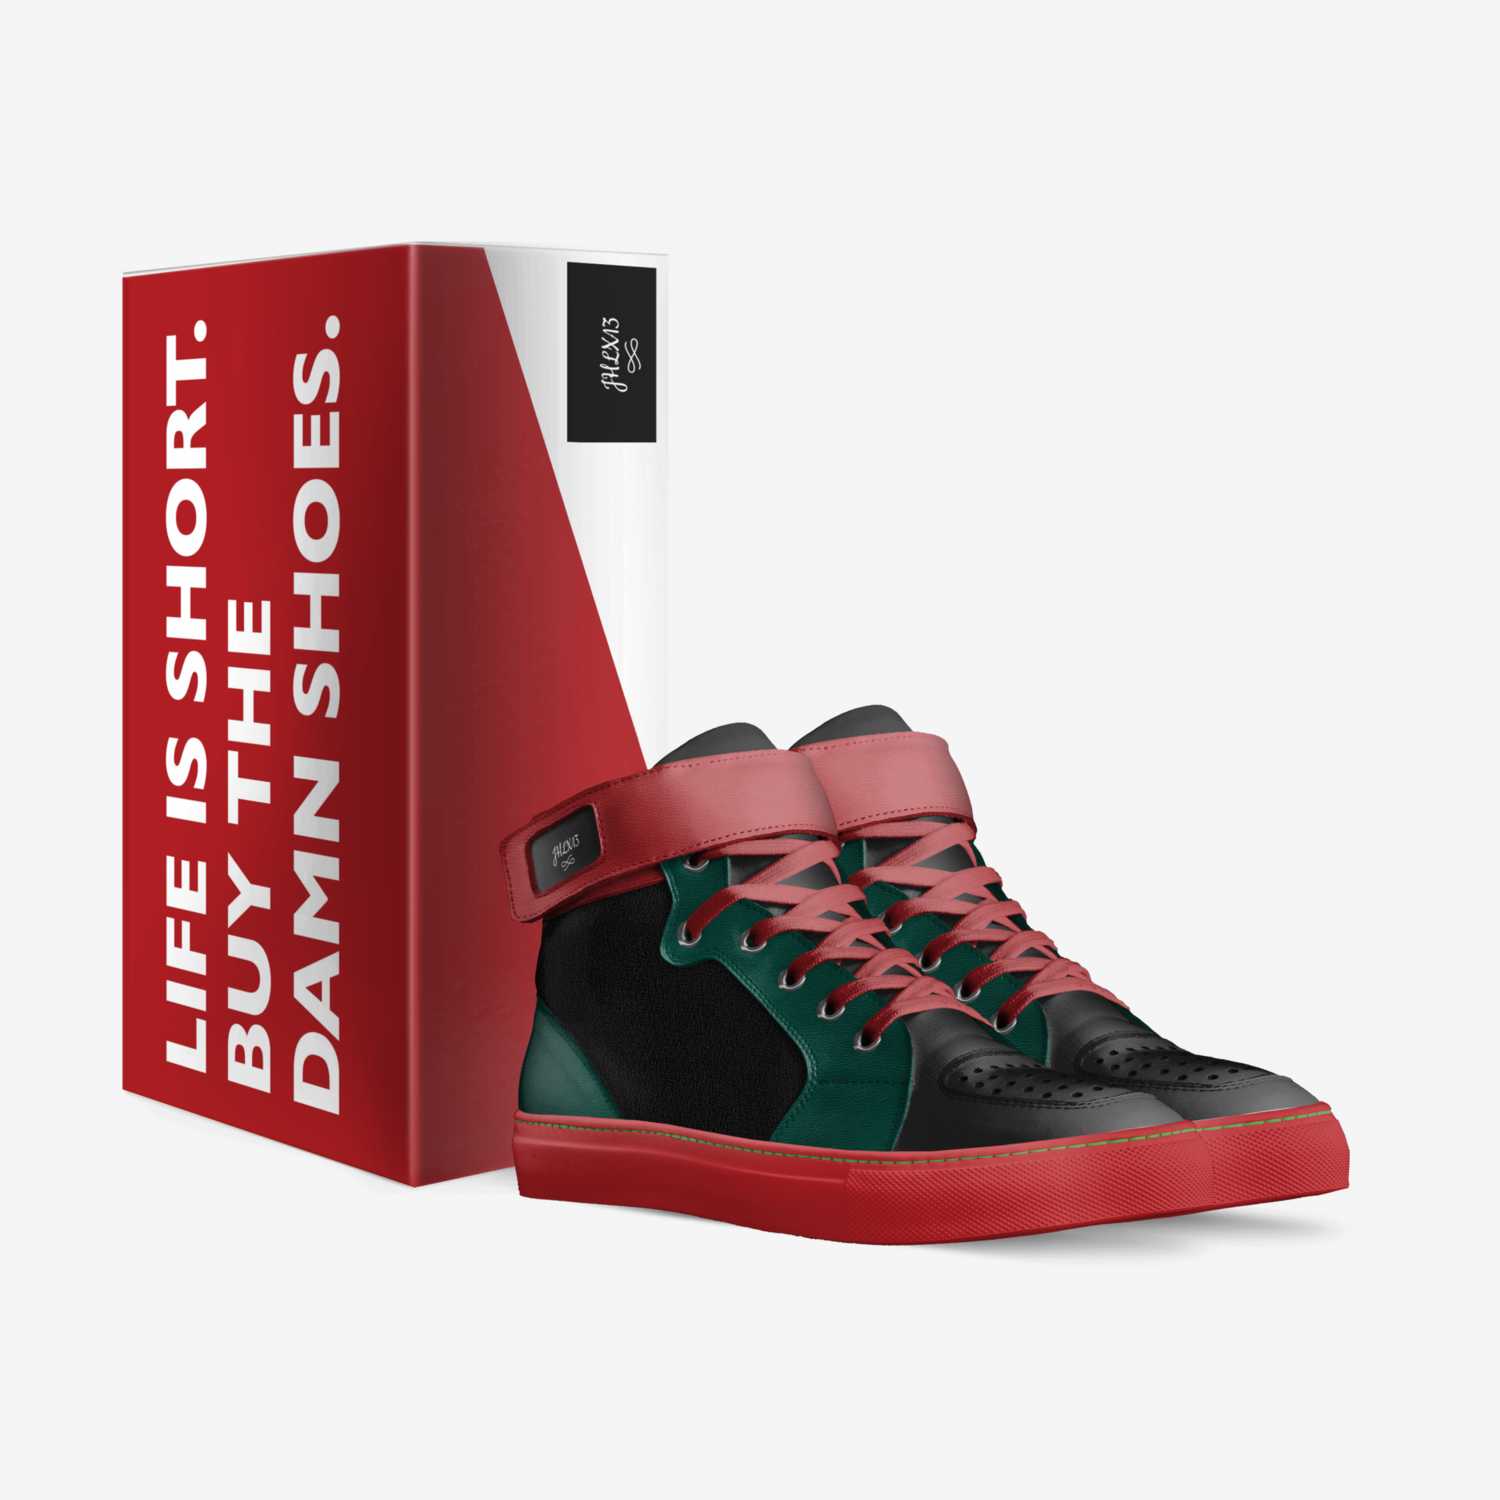 JHLX13 custom made in Italy shoes by Joshua Liam Hendricks | Box view